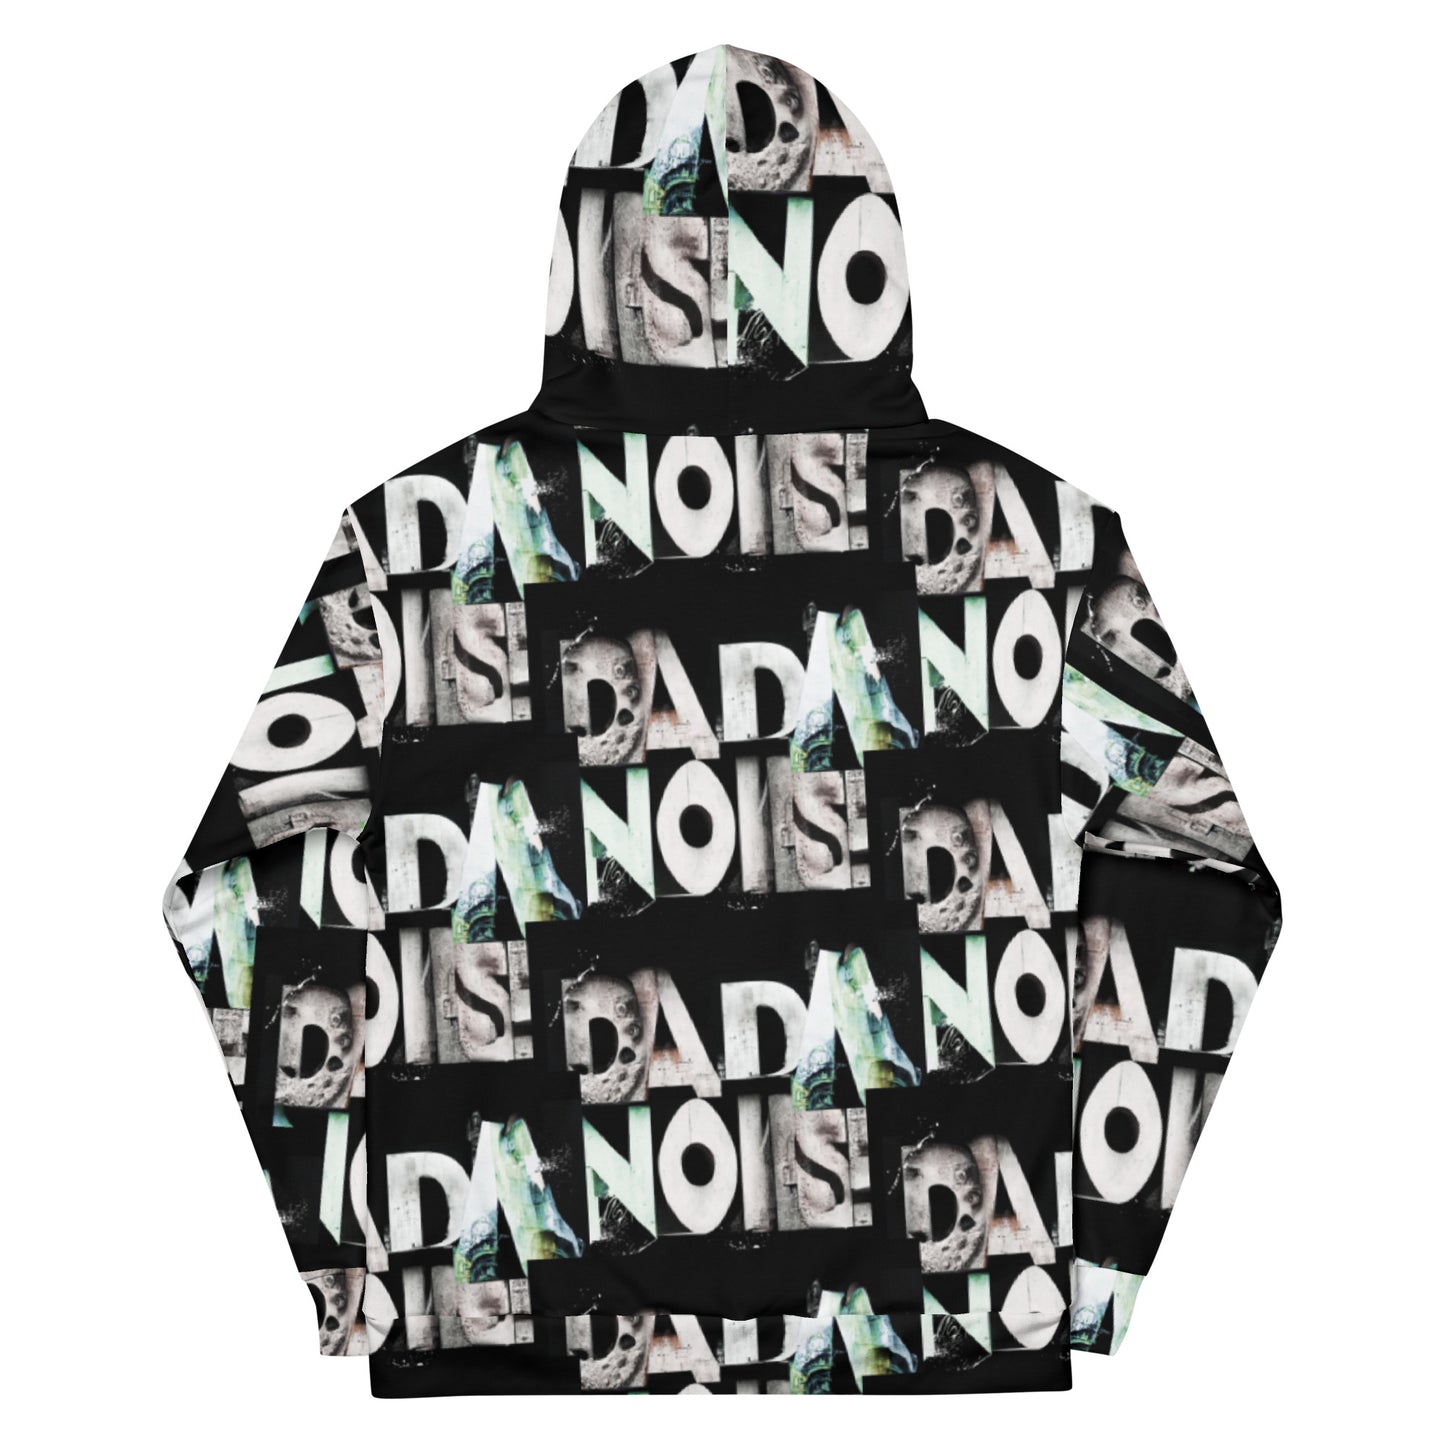 Dada Noise 01 Unisex Hoodie #dada27 Noise Berlin Special